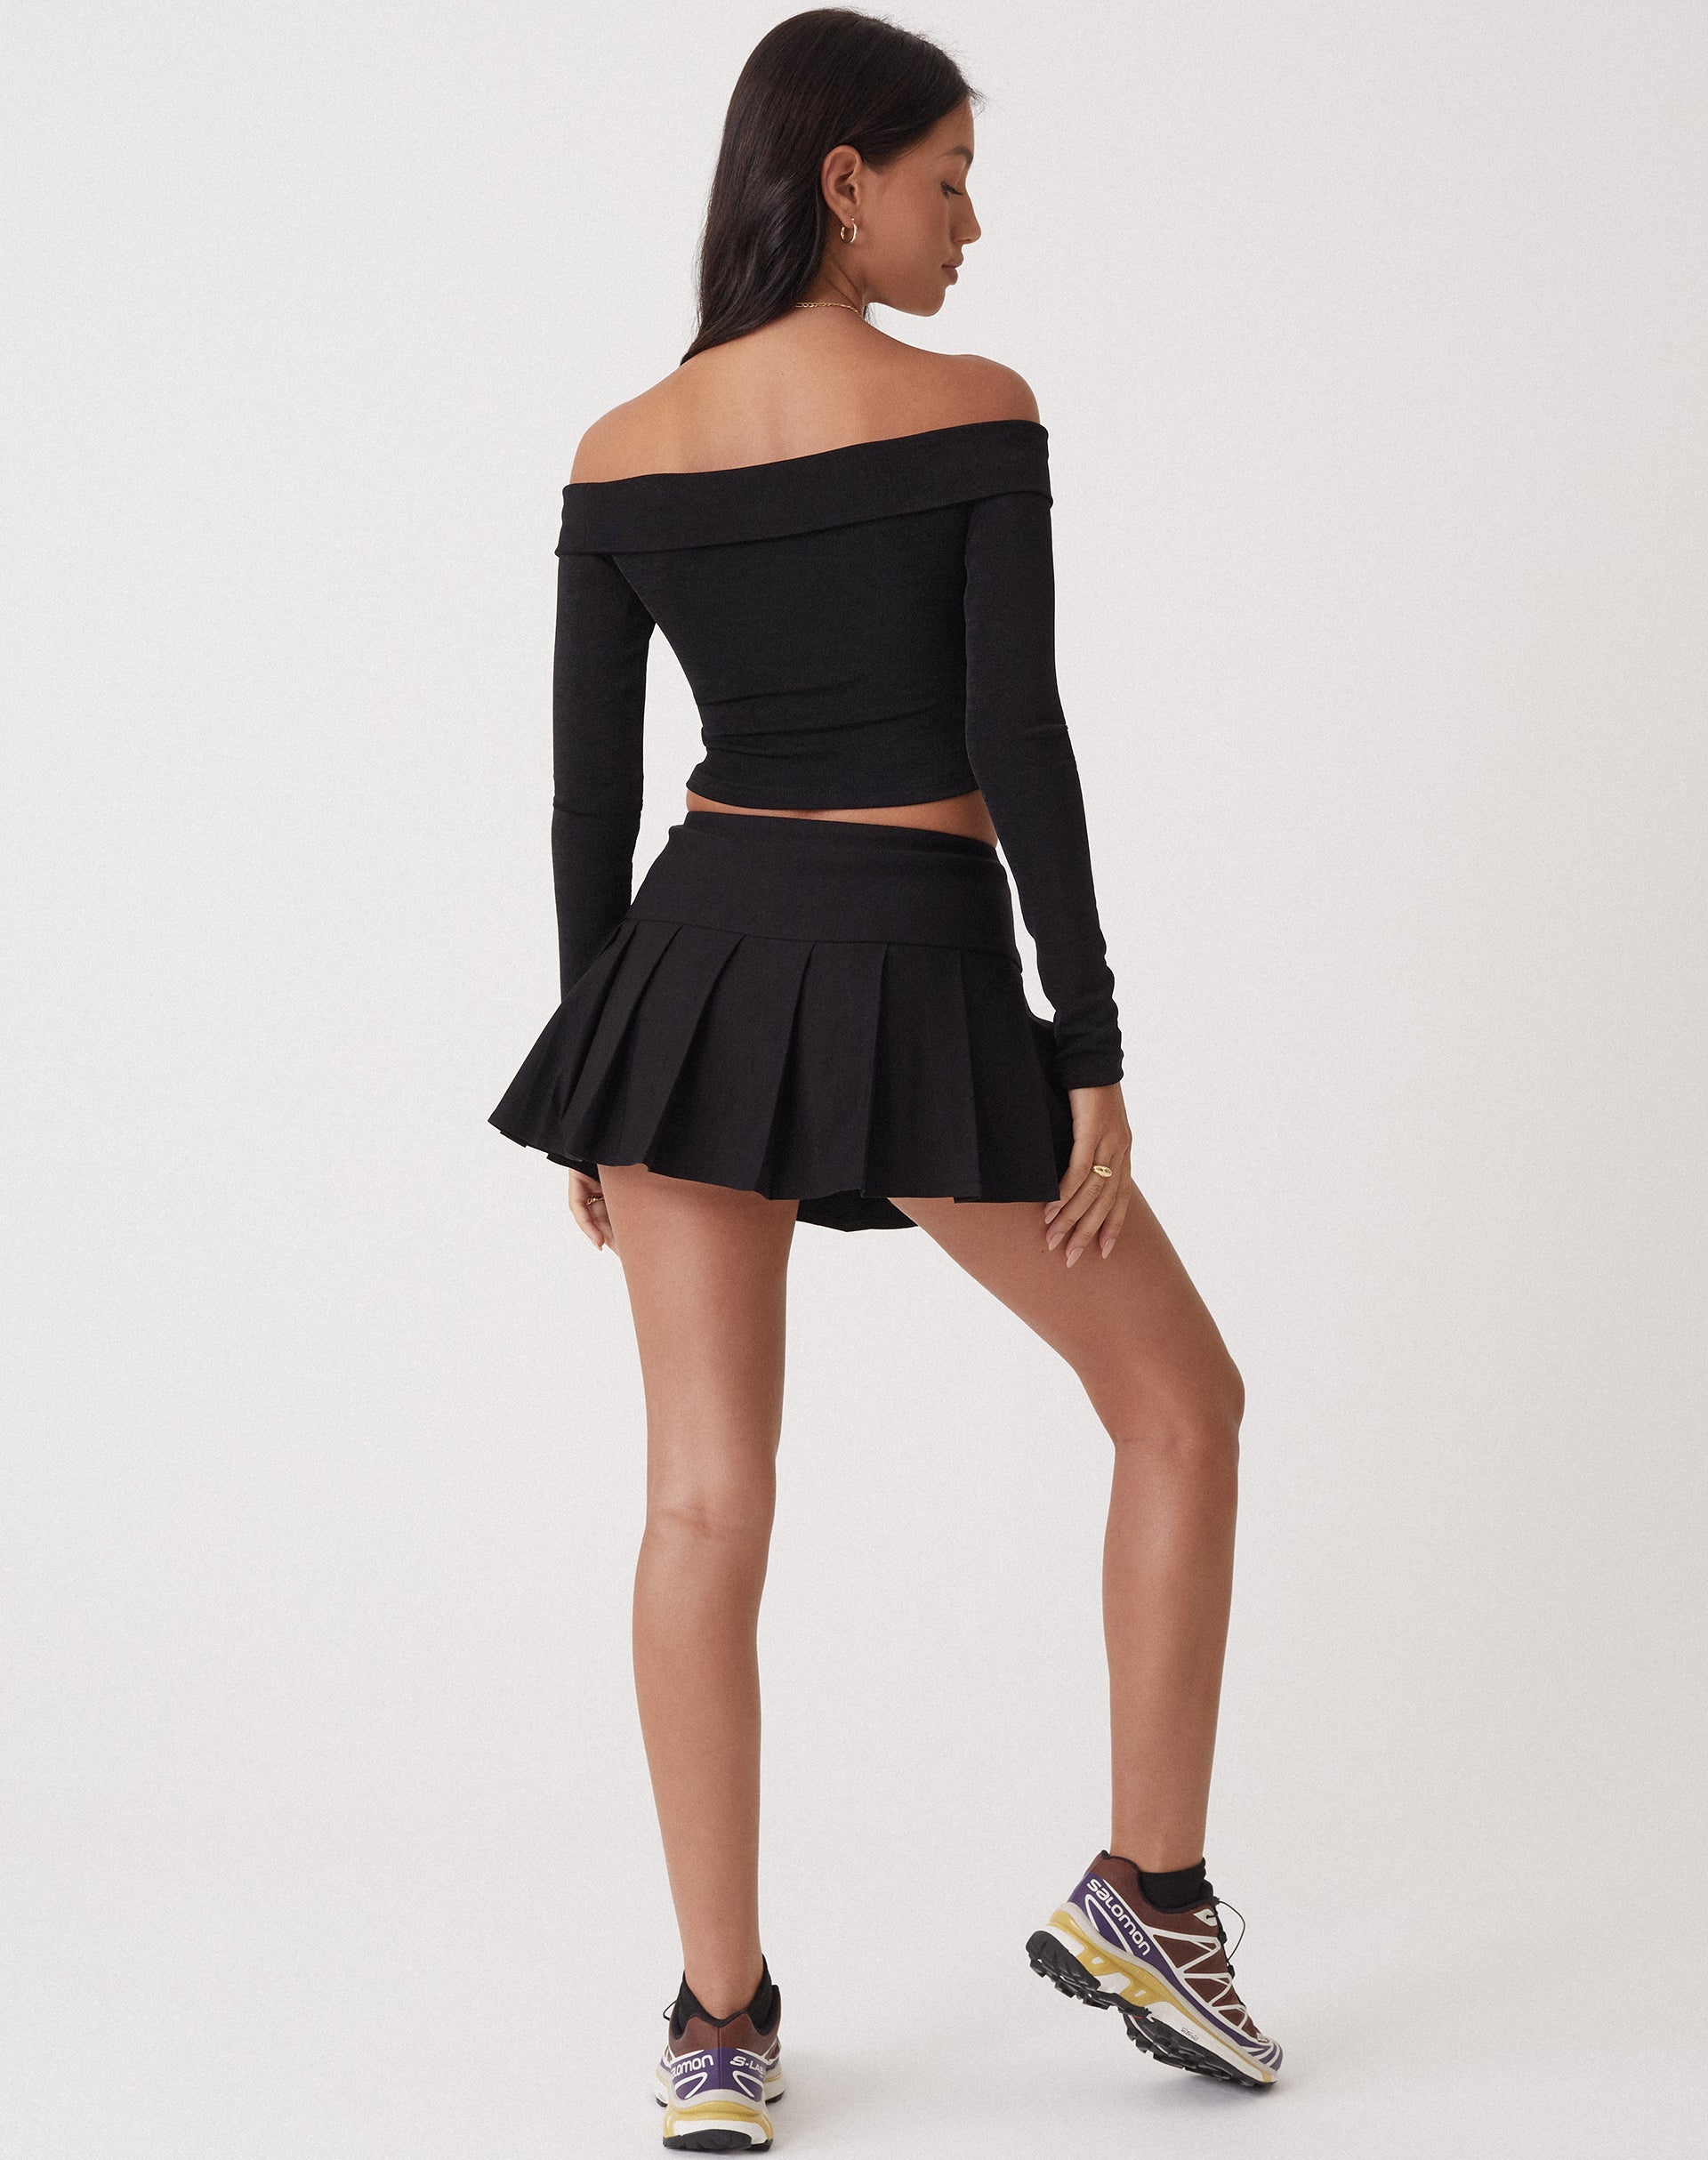 Black Tennis Pleated School Mini Skirt -  UK